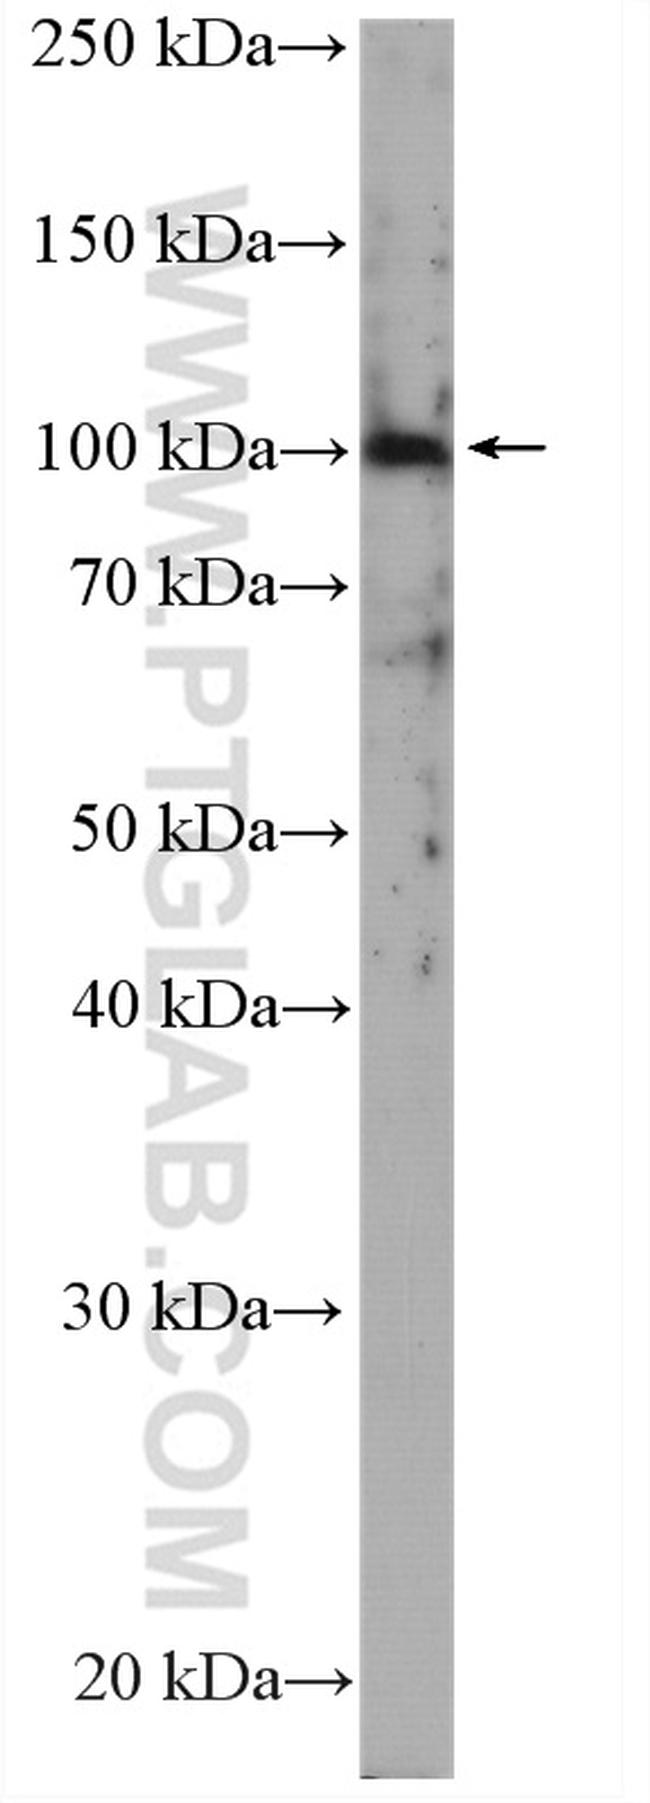 SLC4A1 Antibody in Western Blot (WB)